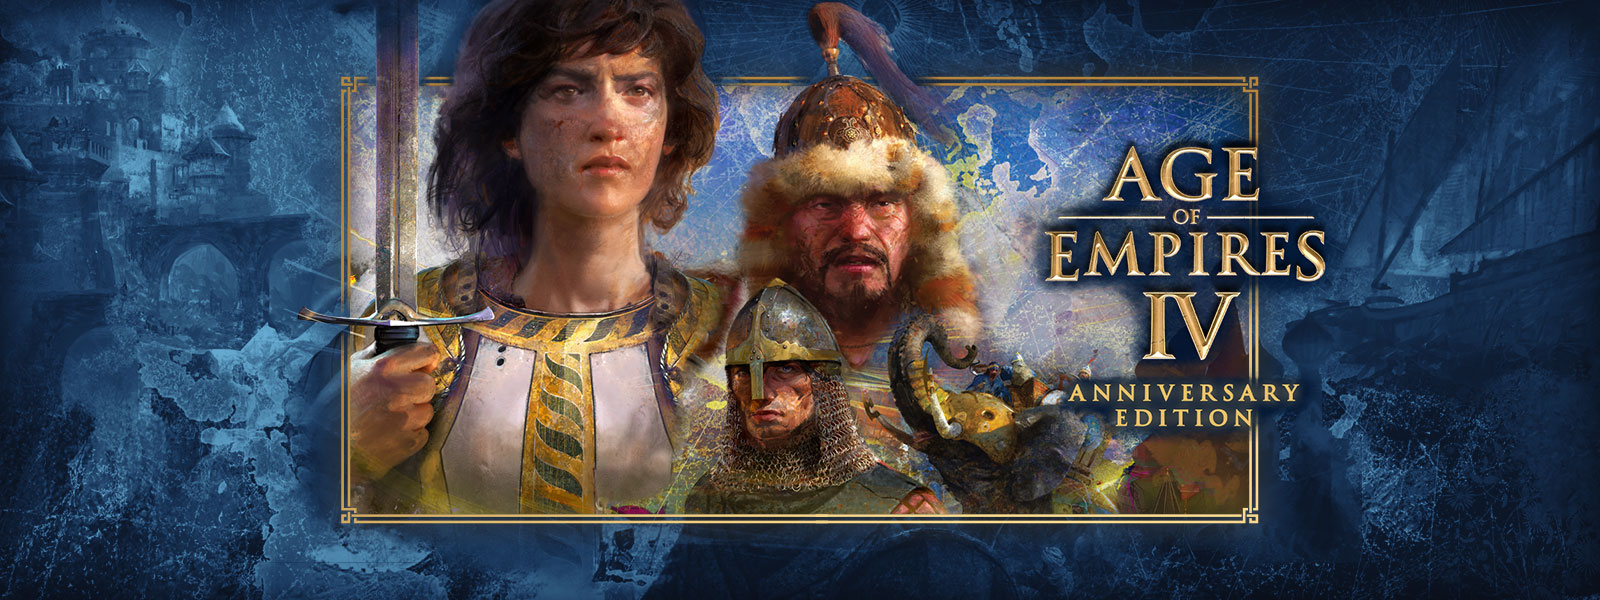 Age of Empires IV: Anniversary Edition. Trois personnages entourés de scènes de guerre et d’éléphants en armure.